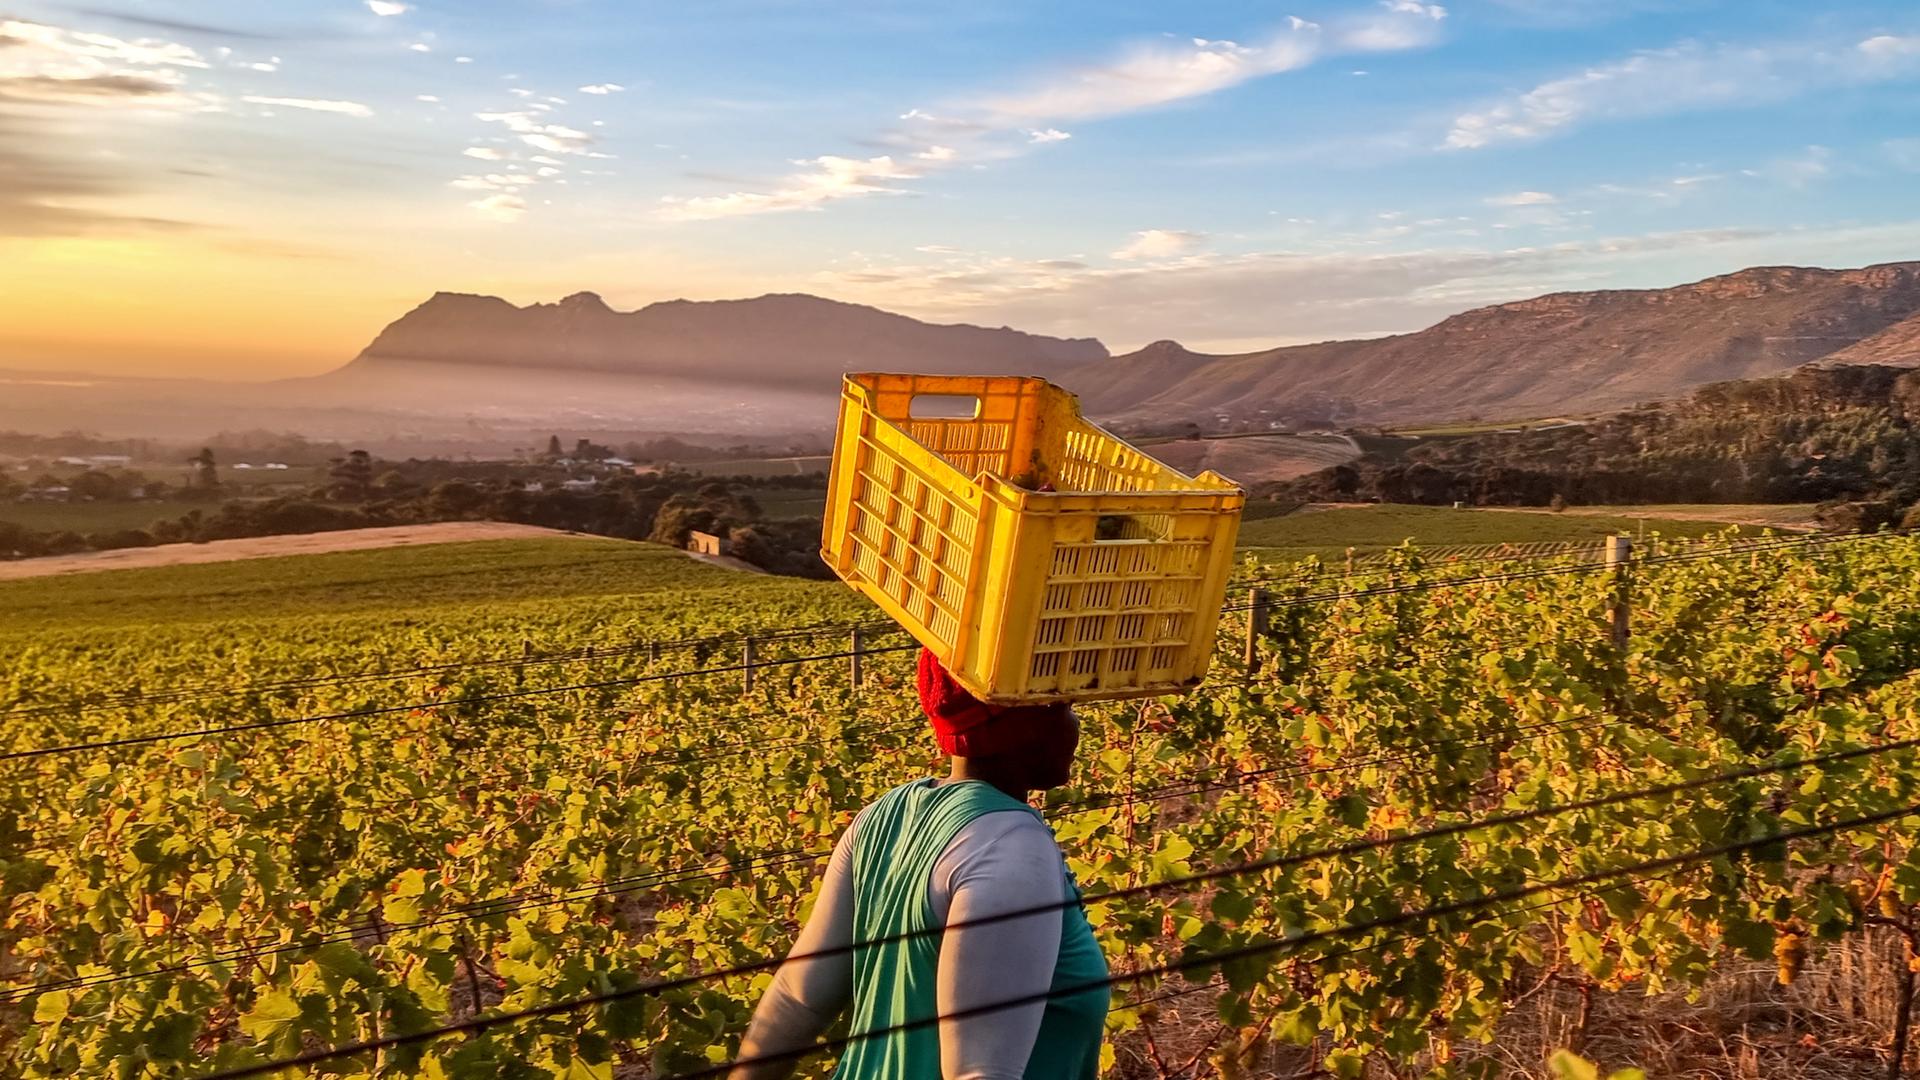 Eine Arbeiterin geht mit einer gelben Kiste auf dem Kopf durch einen Weinberg in der Nähe von Kapstadt.